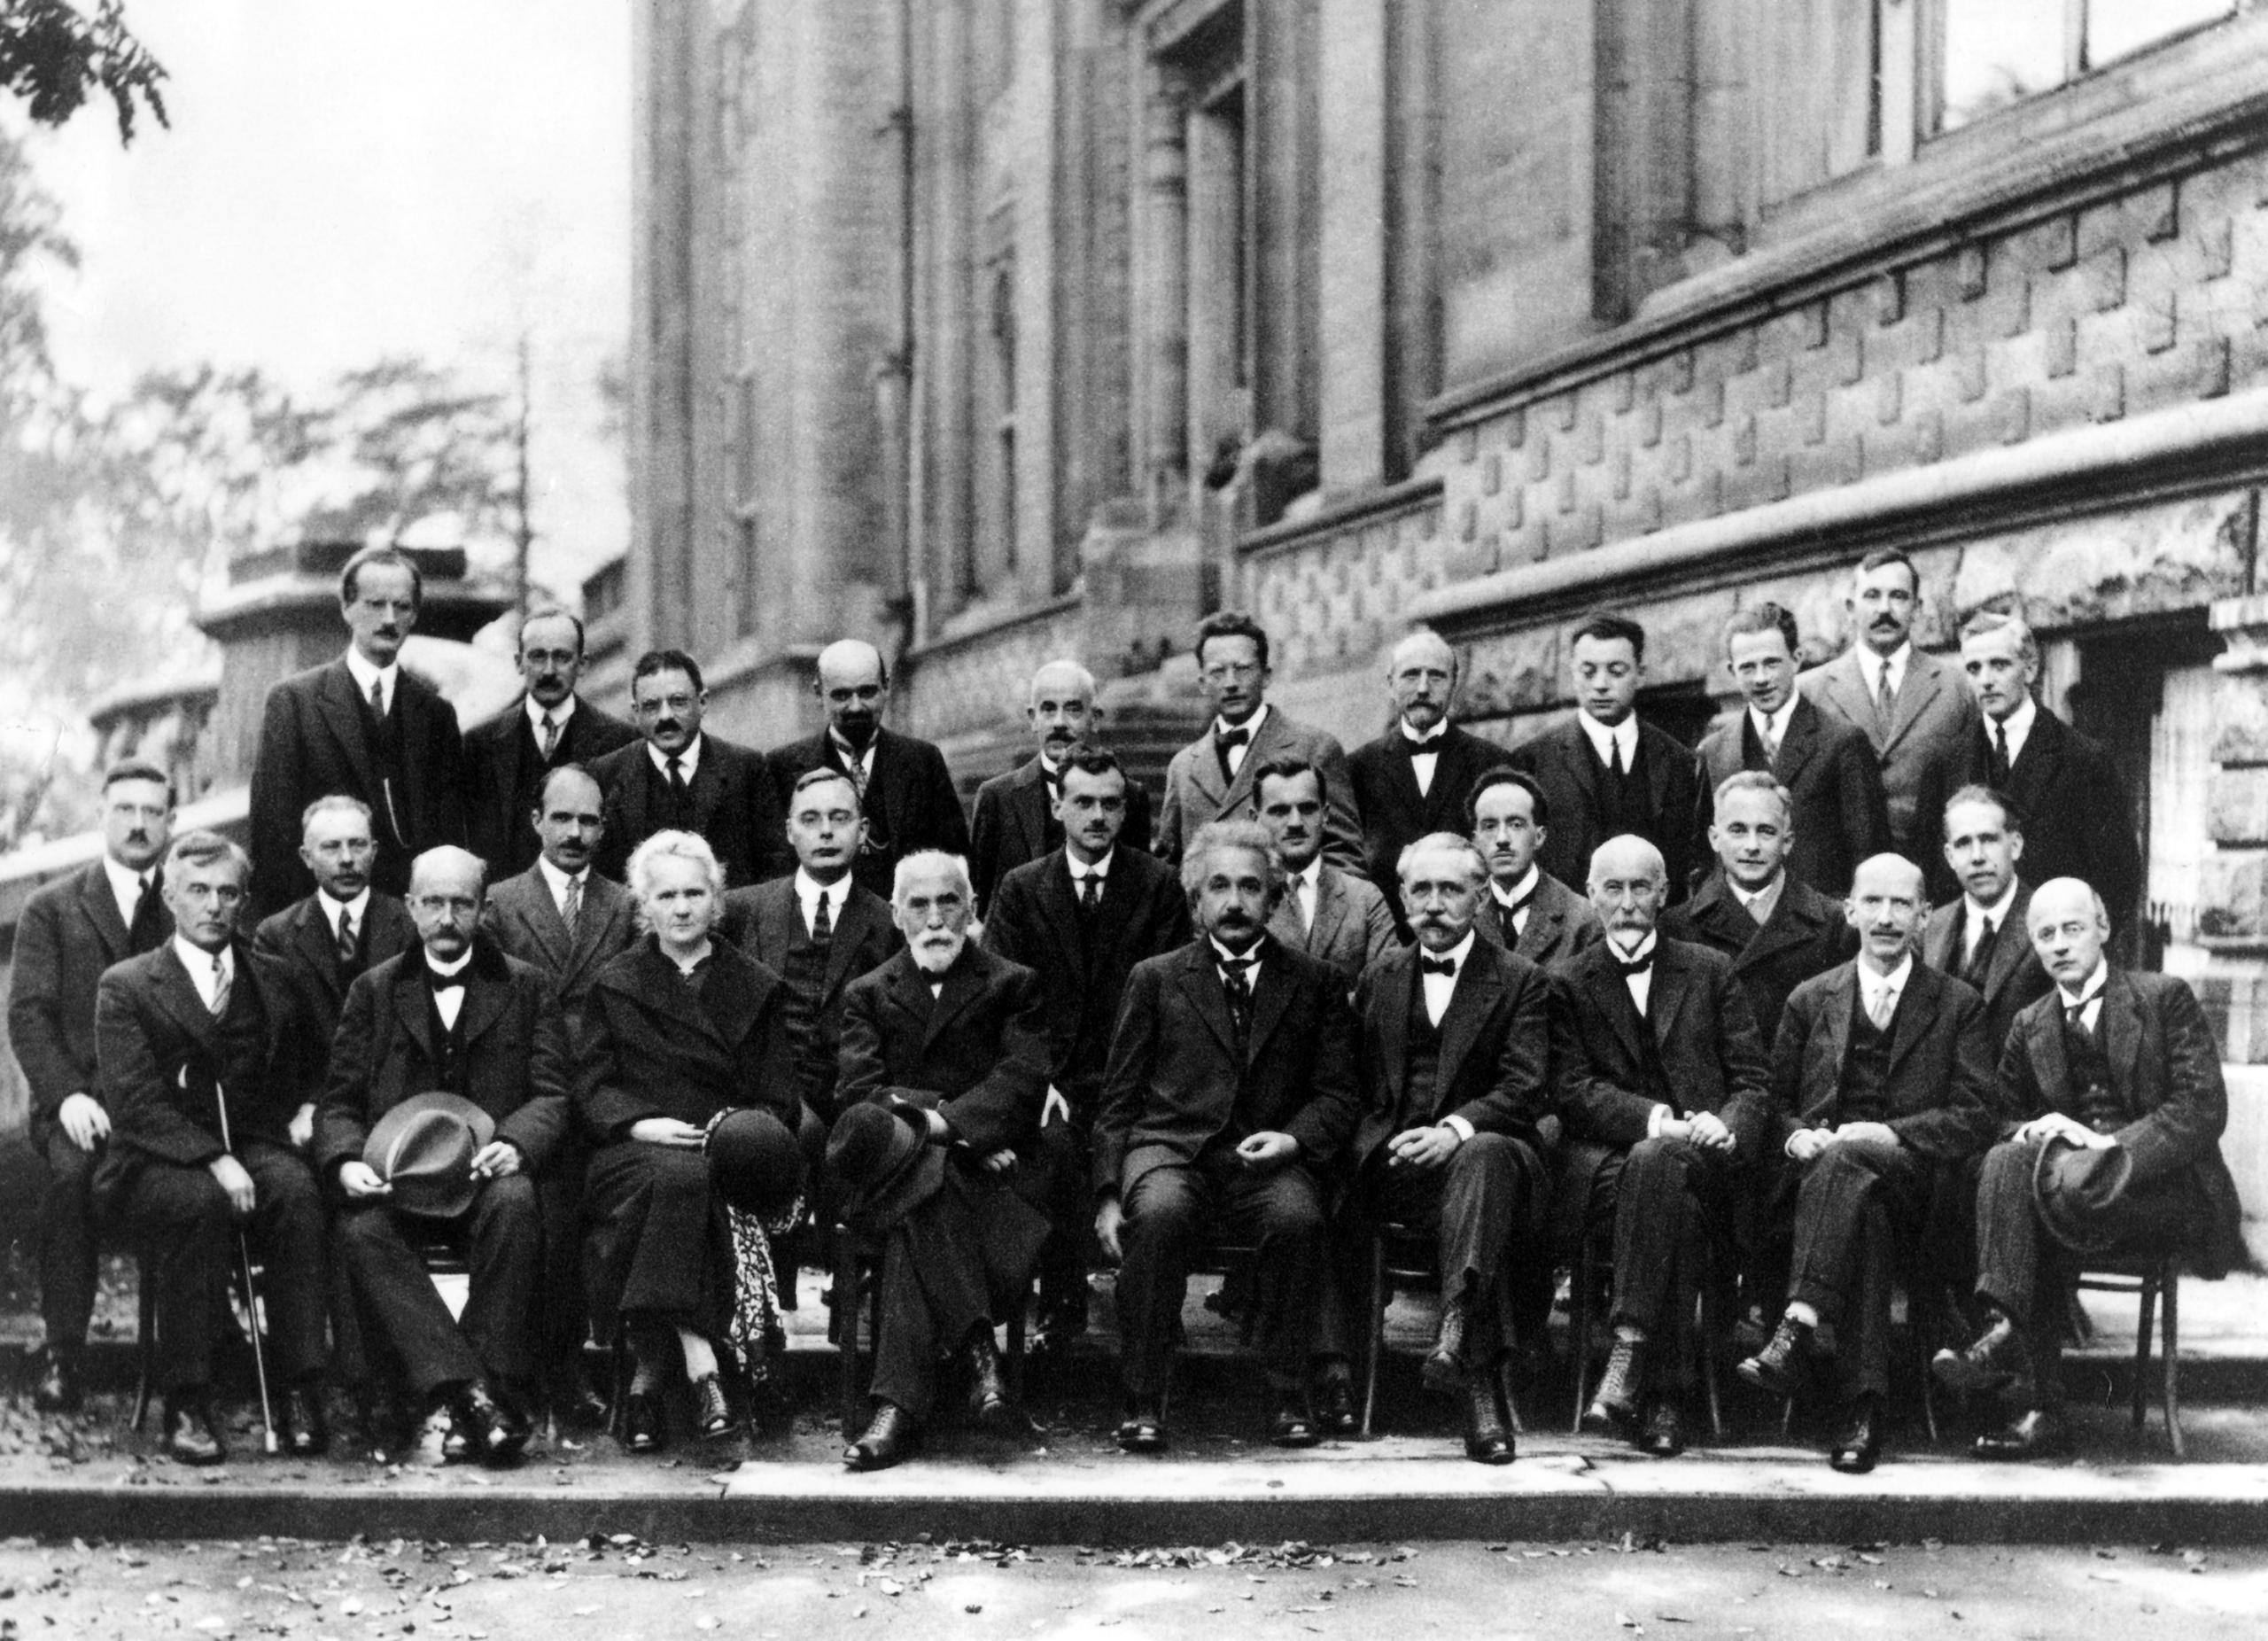 صورة جماعية بالأبيض والأسود للمشاركين في مؤتمر سولفاي سنة 1927